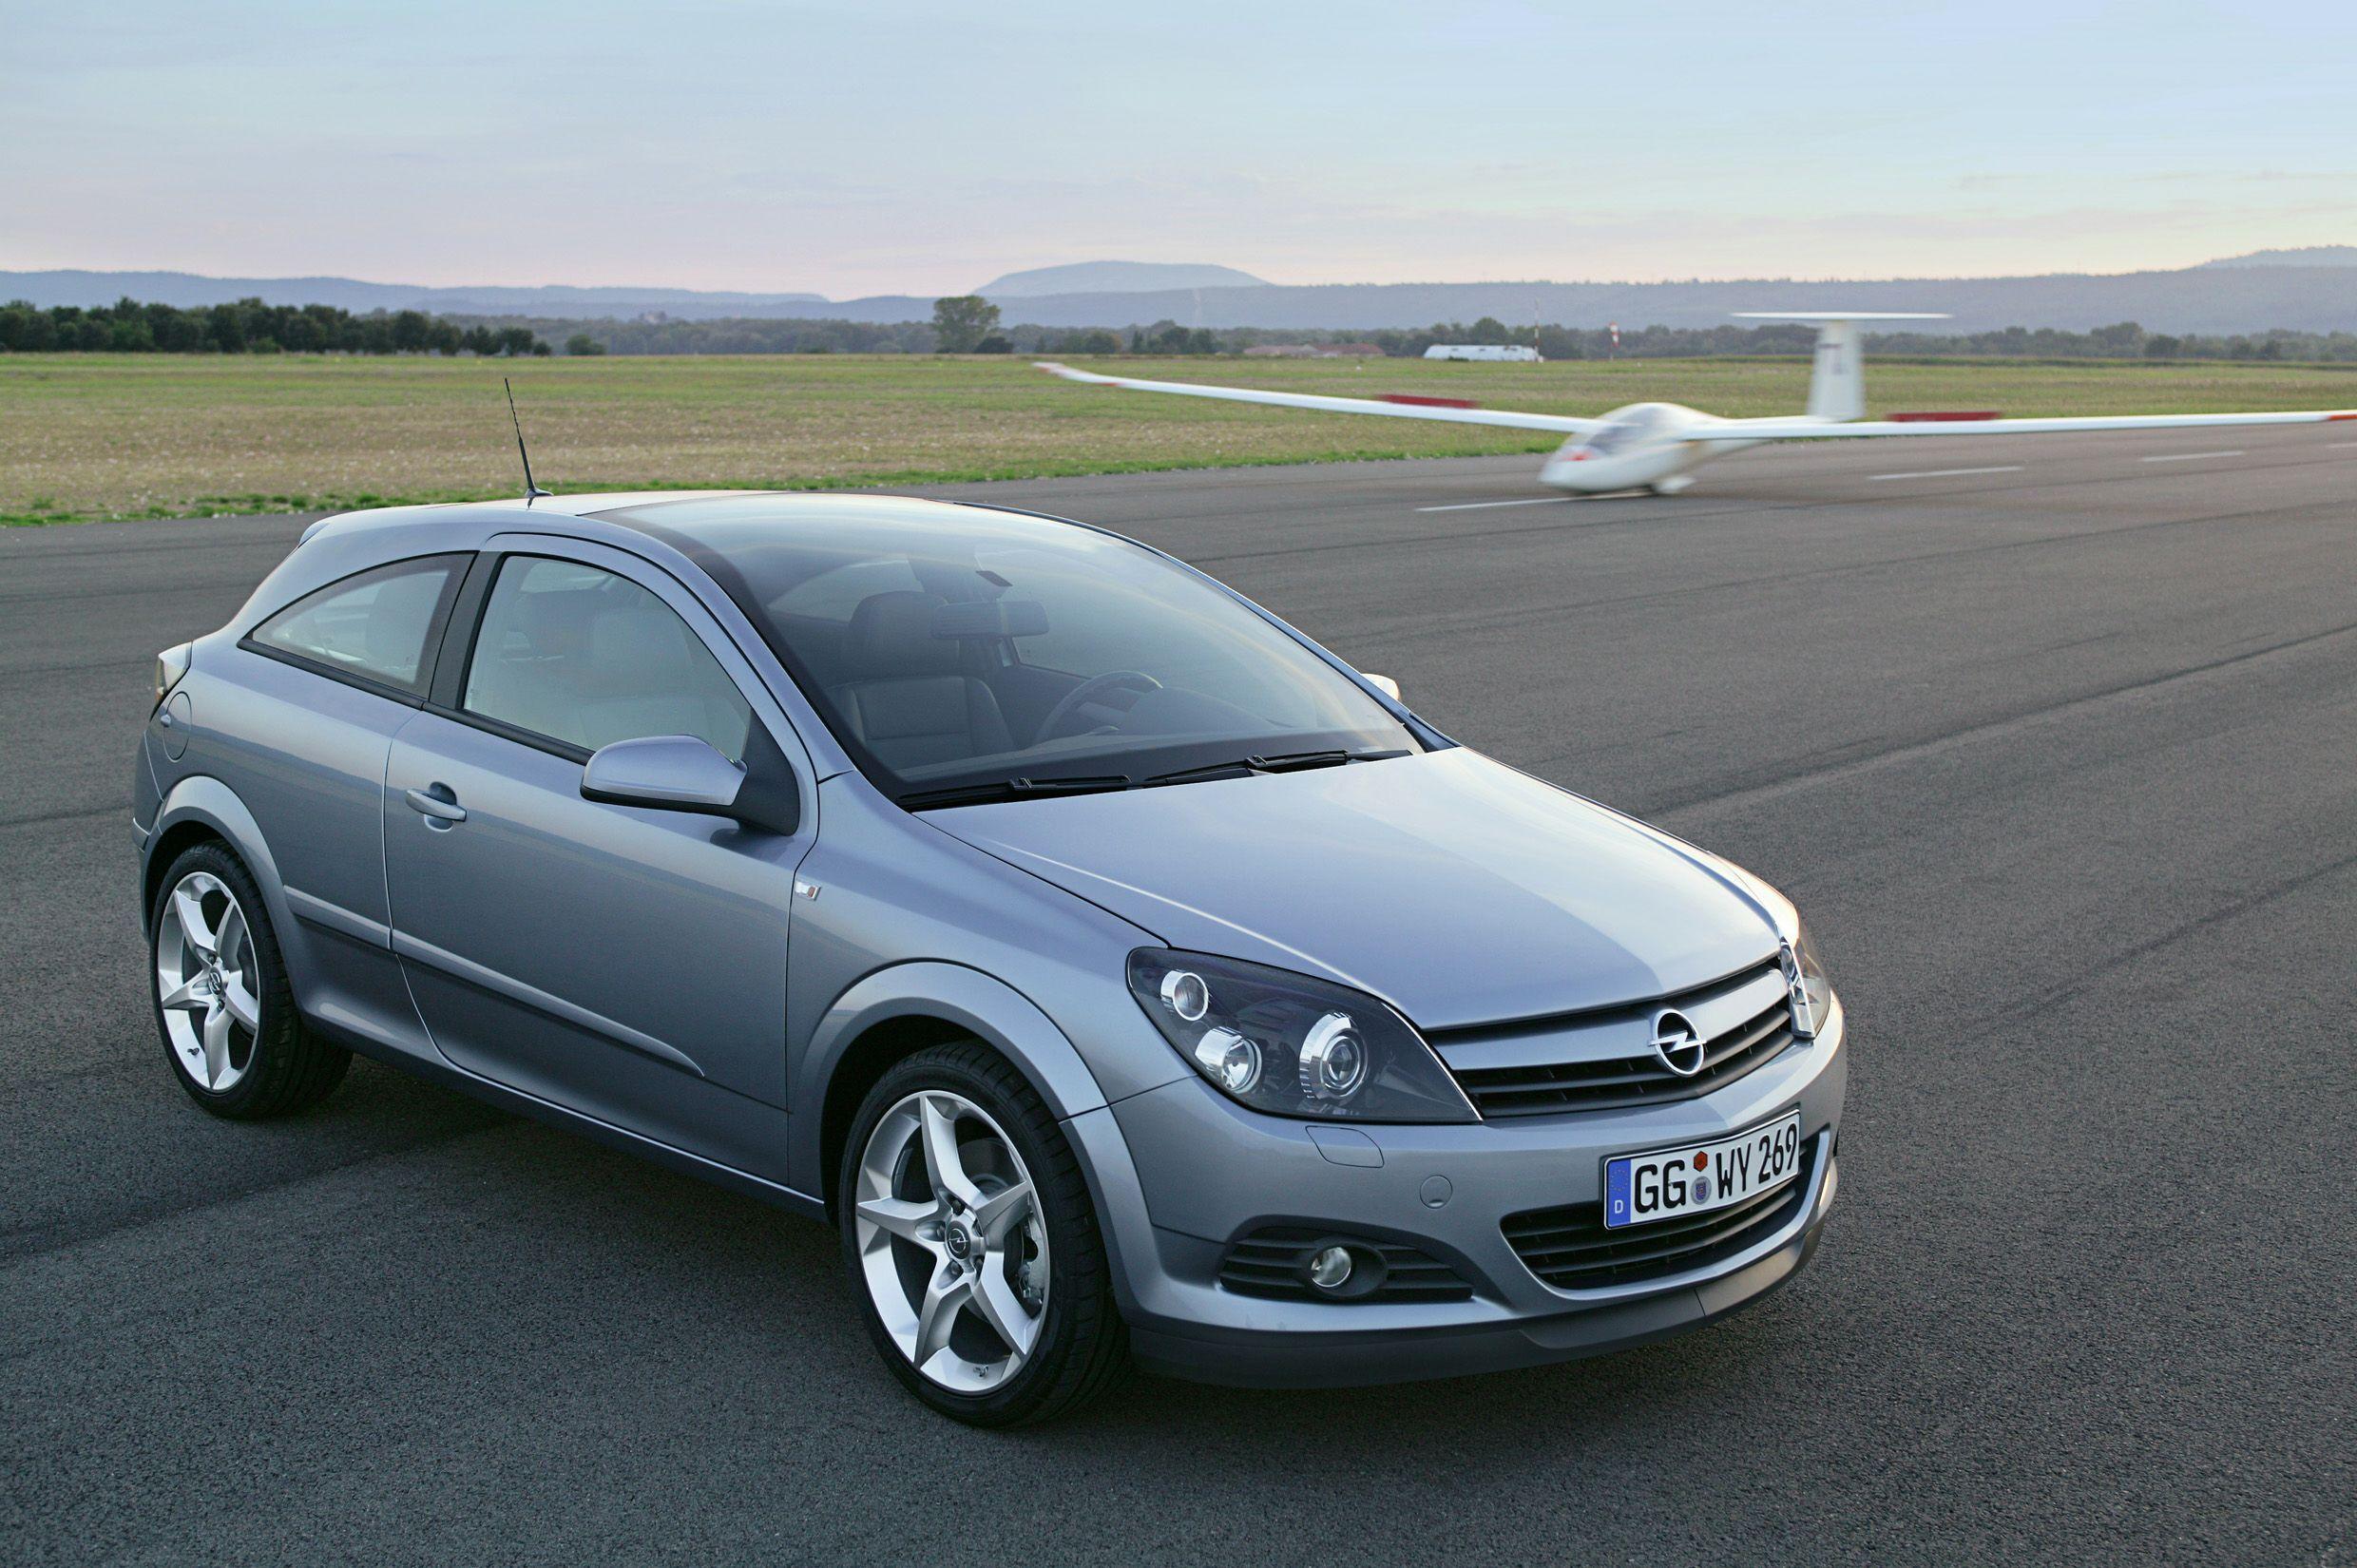 Opel c 1.8. Opel Astra h GTC. Opel Astra h GTC 1.8. Opel Astra h GTC 1.6. Opel Astra h GTC 2008.